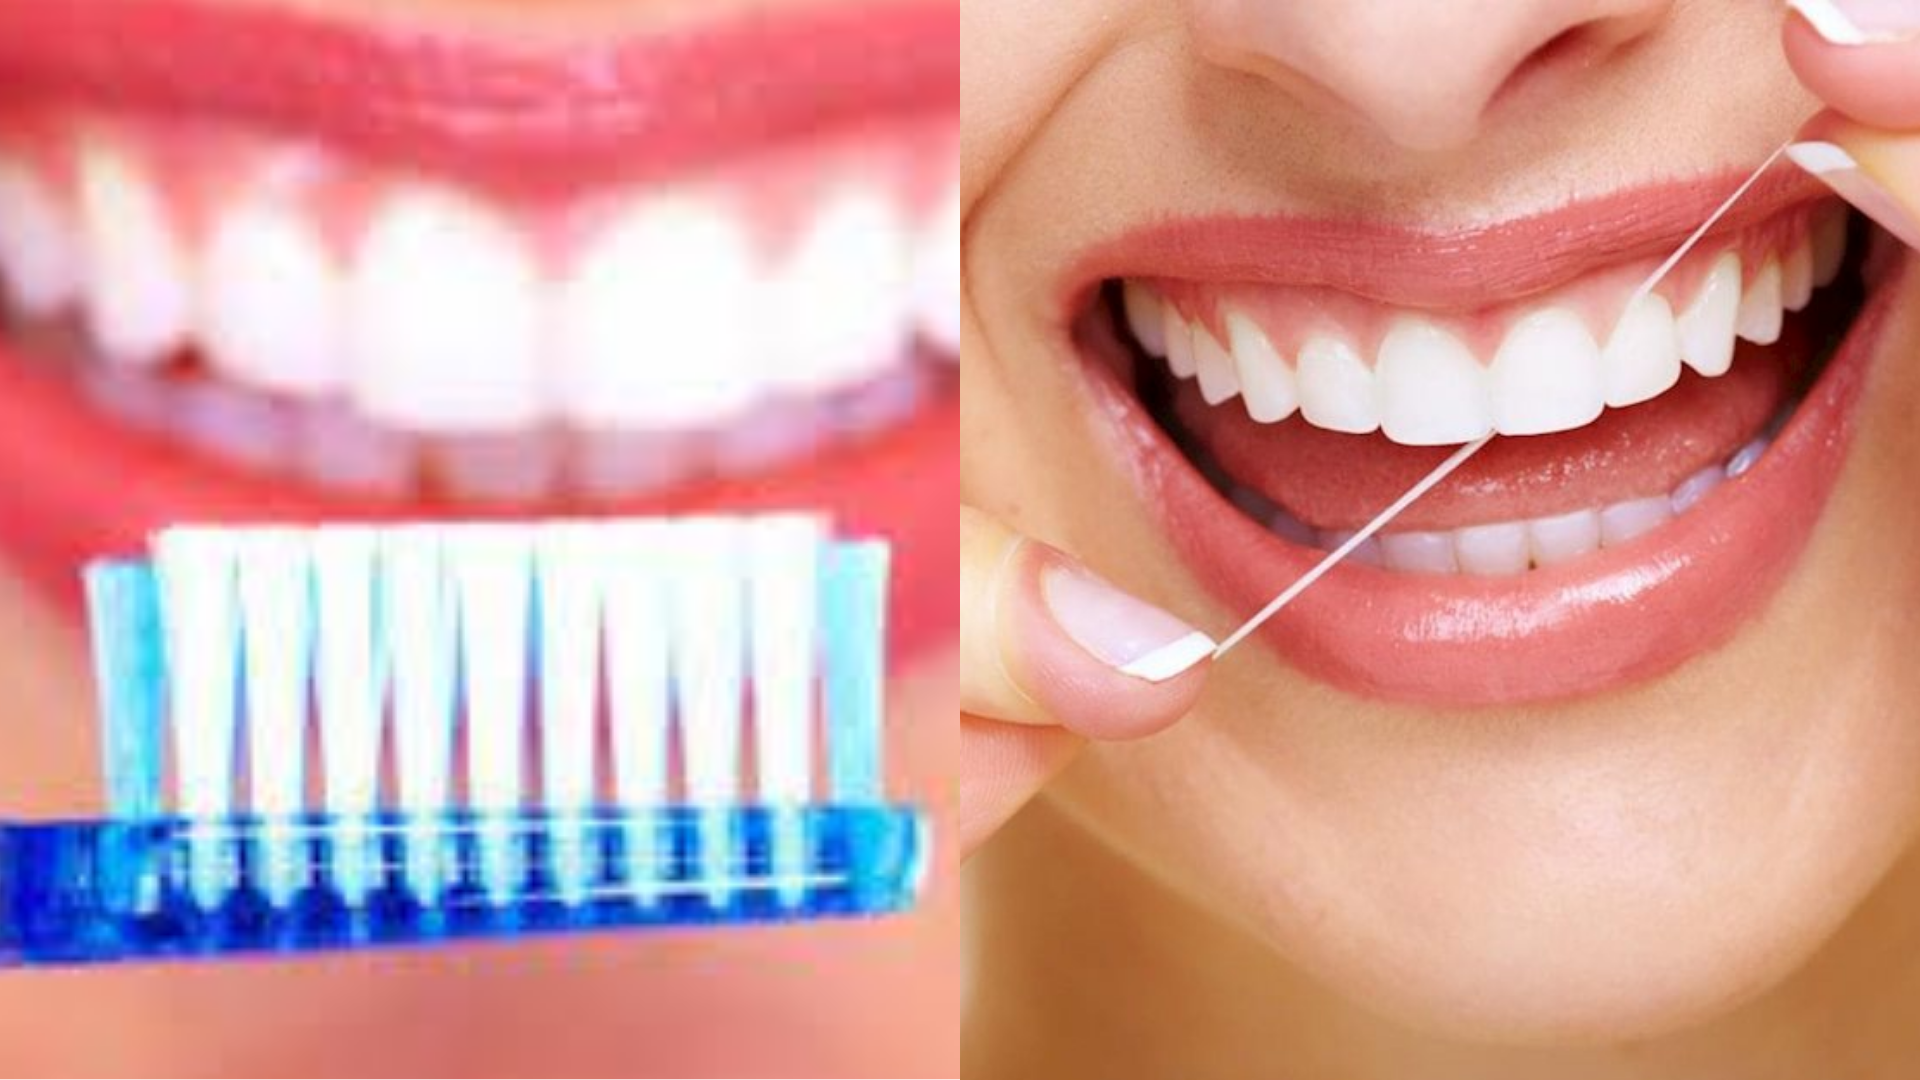 Đánh răng và dùng chỉ nha khoa đều đặn giúp vệ sinh răng miệng hiệu quả.  (Đồ họa: VA)